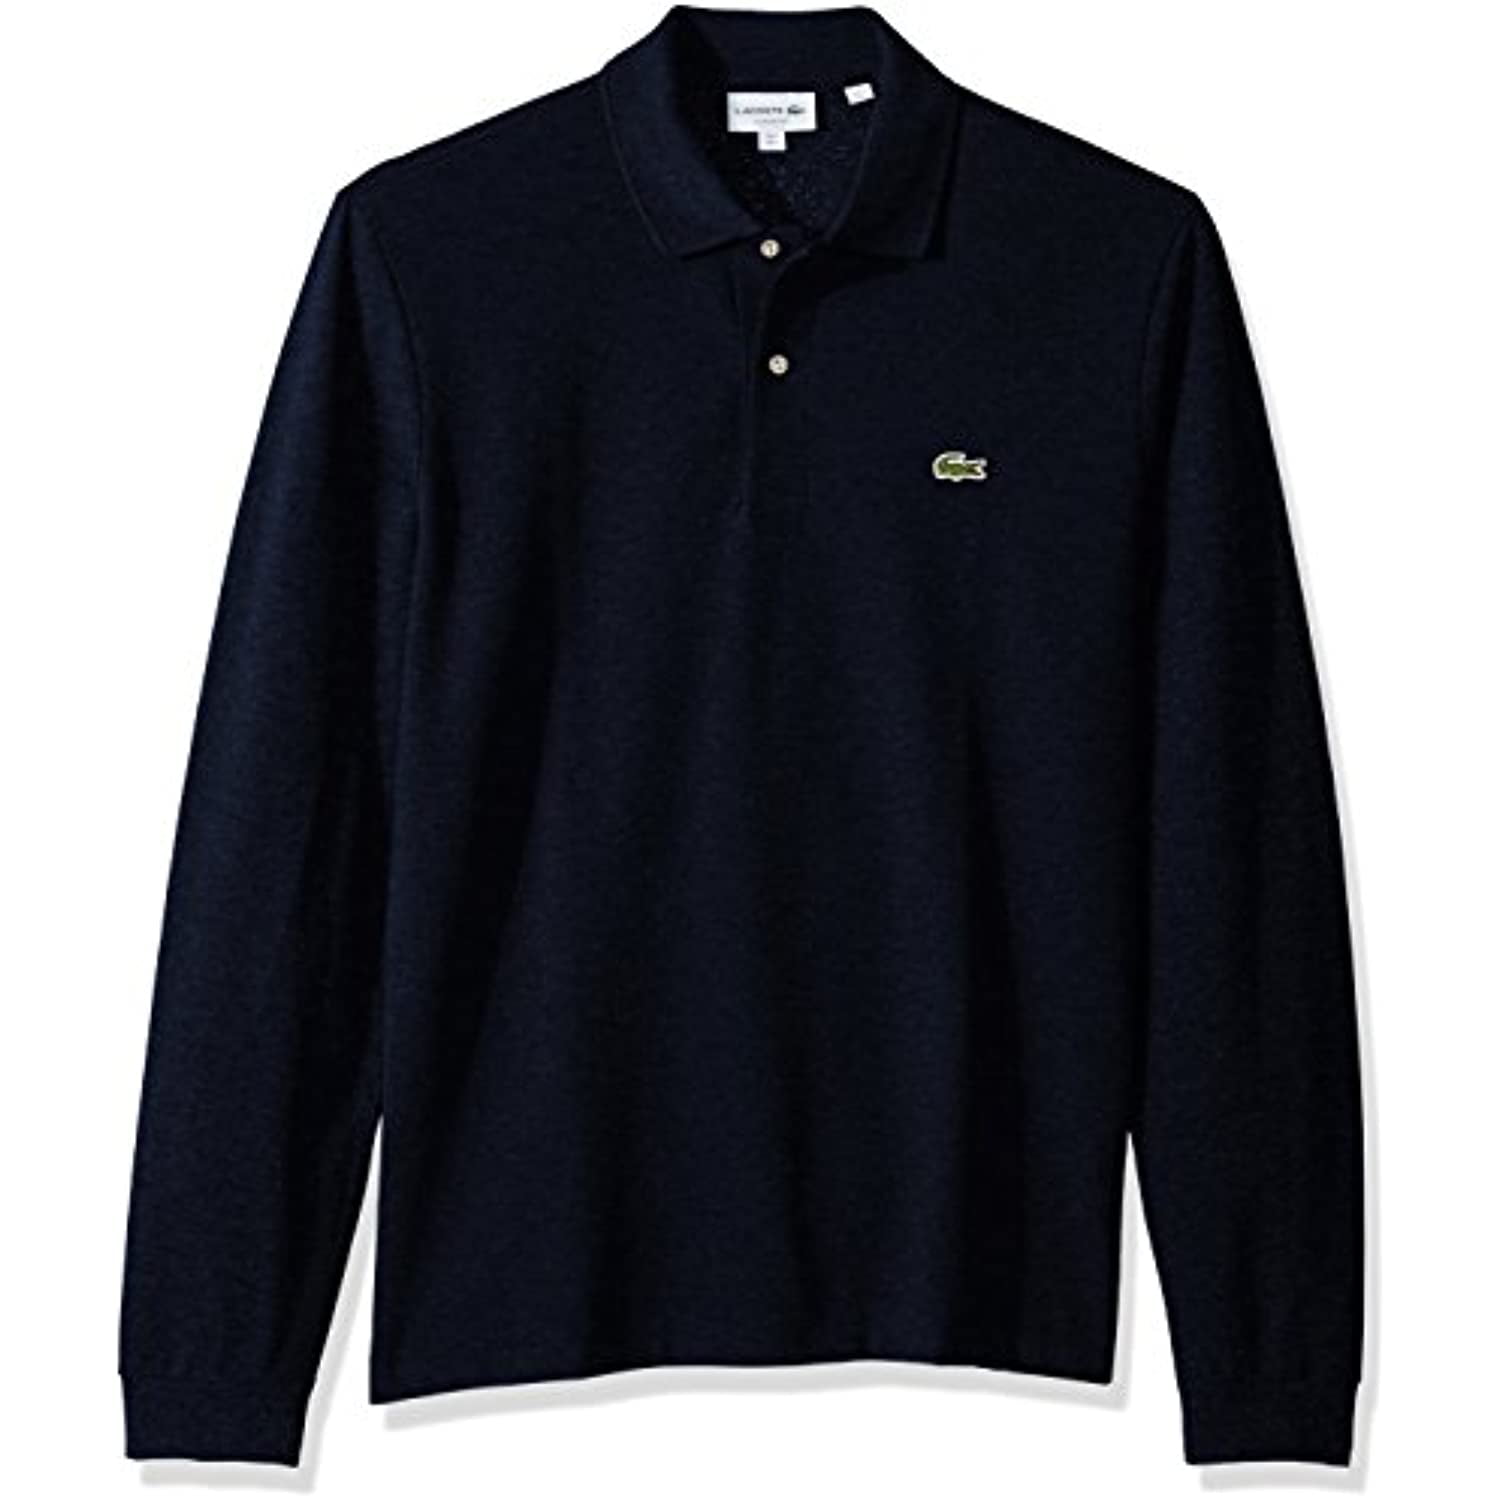 Lacoste Men's Classic Sleeve Pique Polo Shirt, Eclipse Blue Chine, L Walmart.com